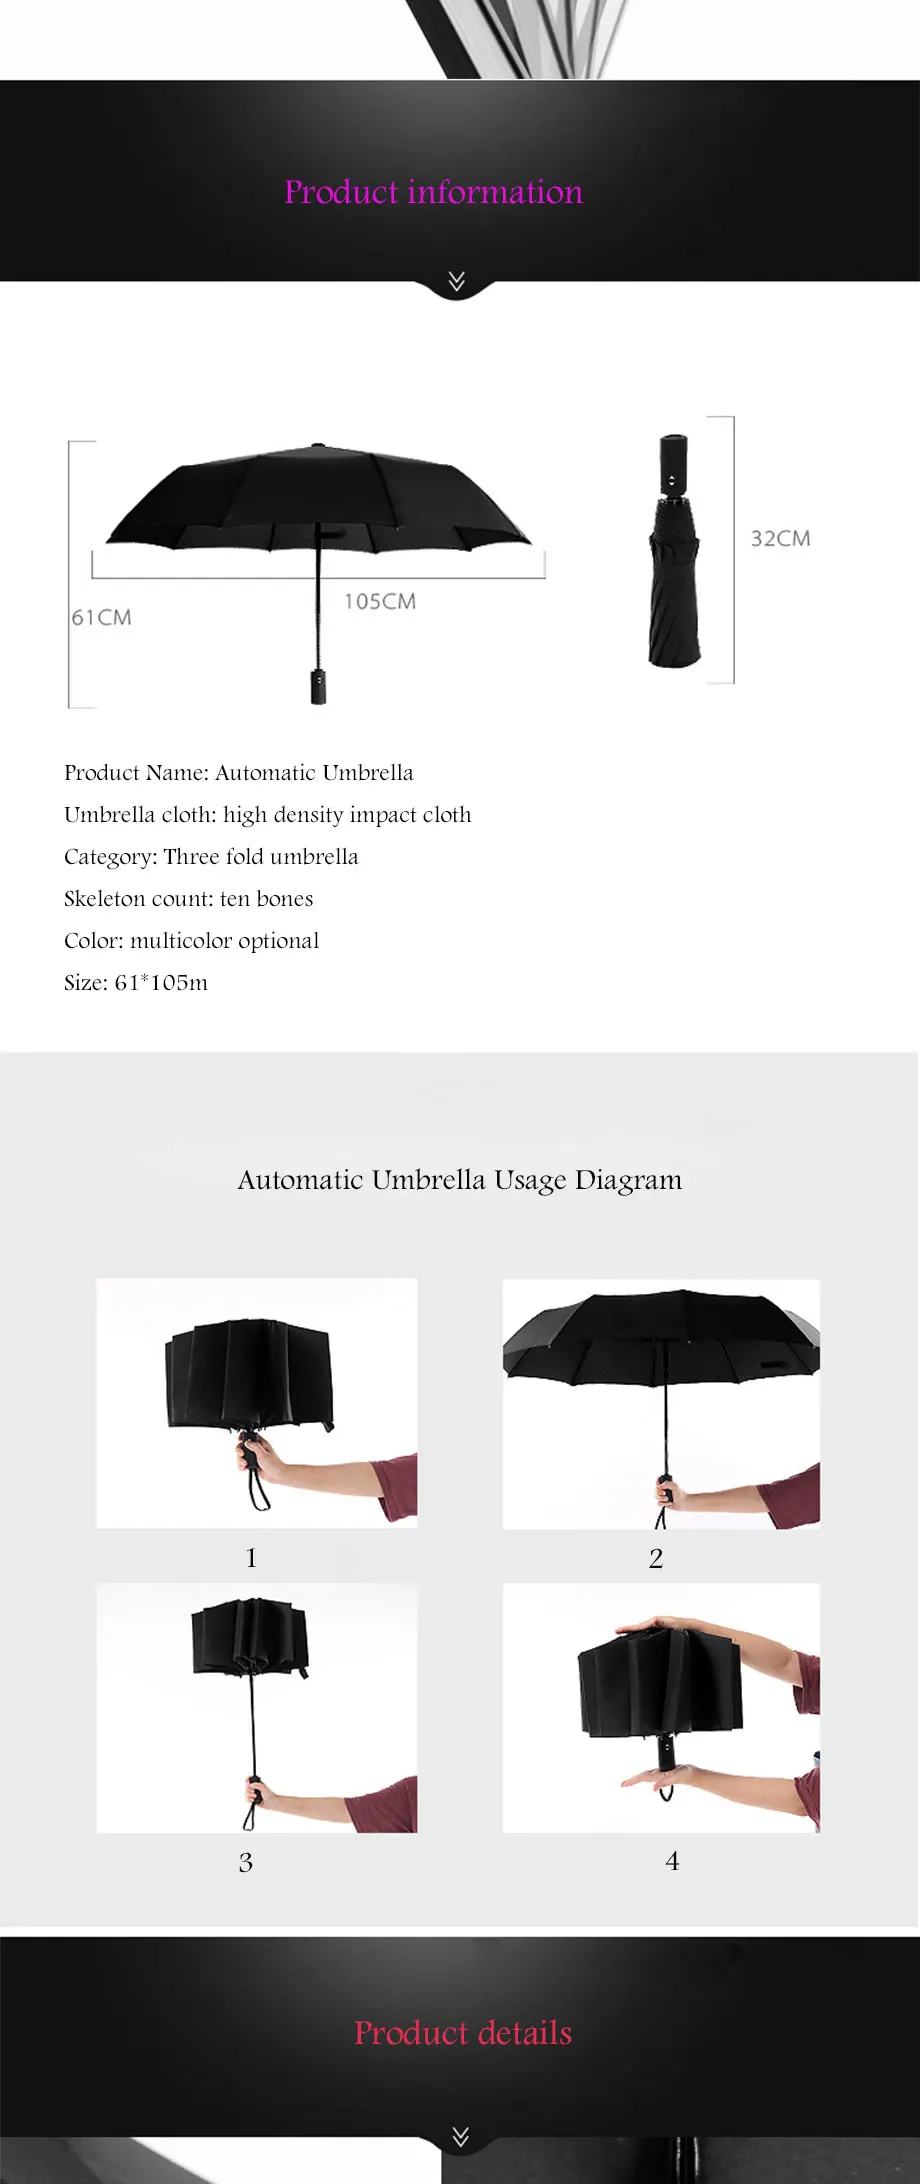 Полностью автоматический зонт 10 двухслойный зонтик, водонепроницаемое покрытие, увеличенная поверхность зонта сильный зонтик